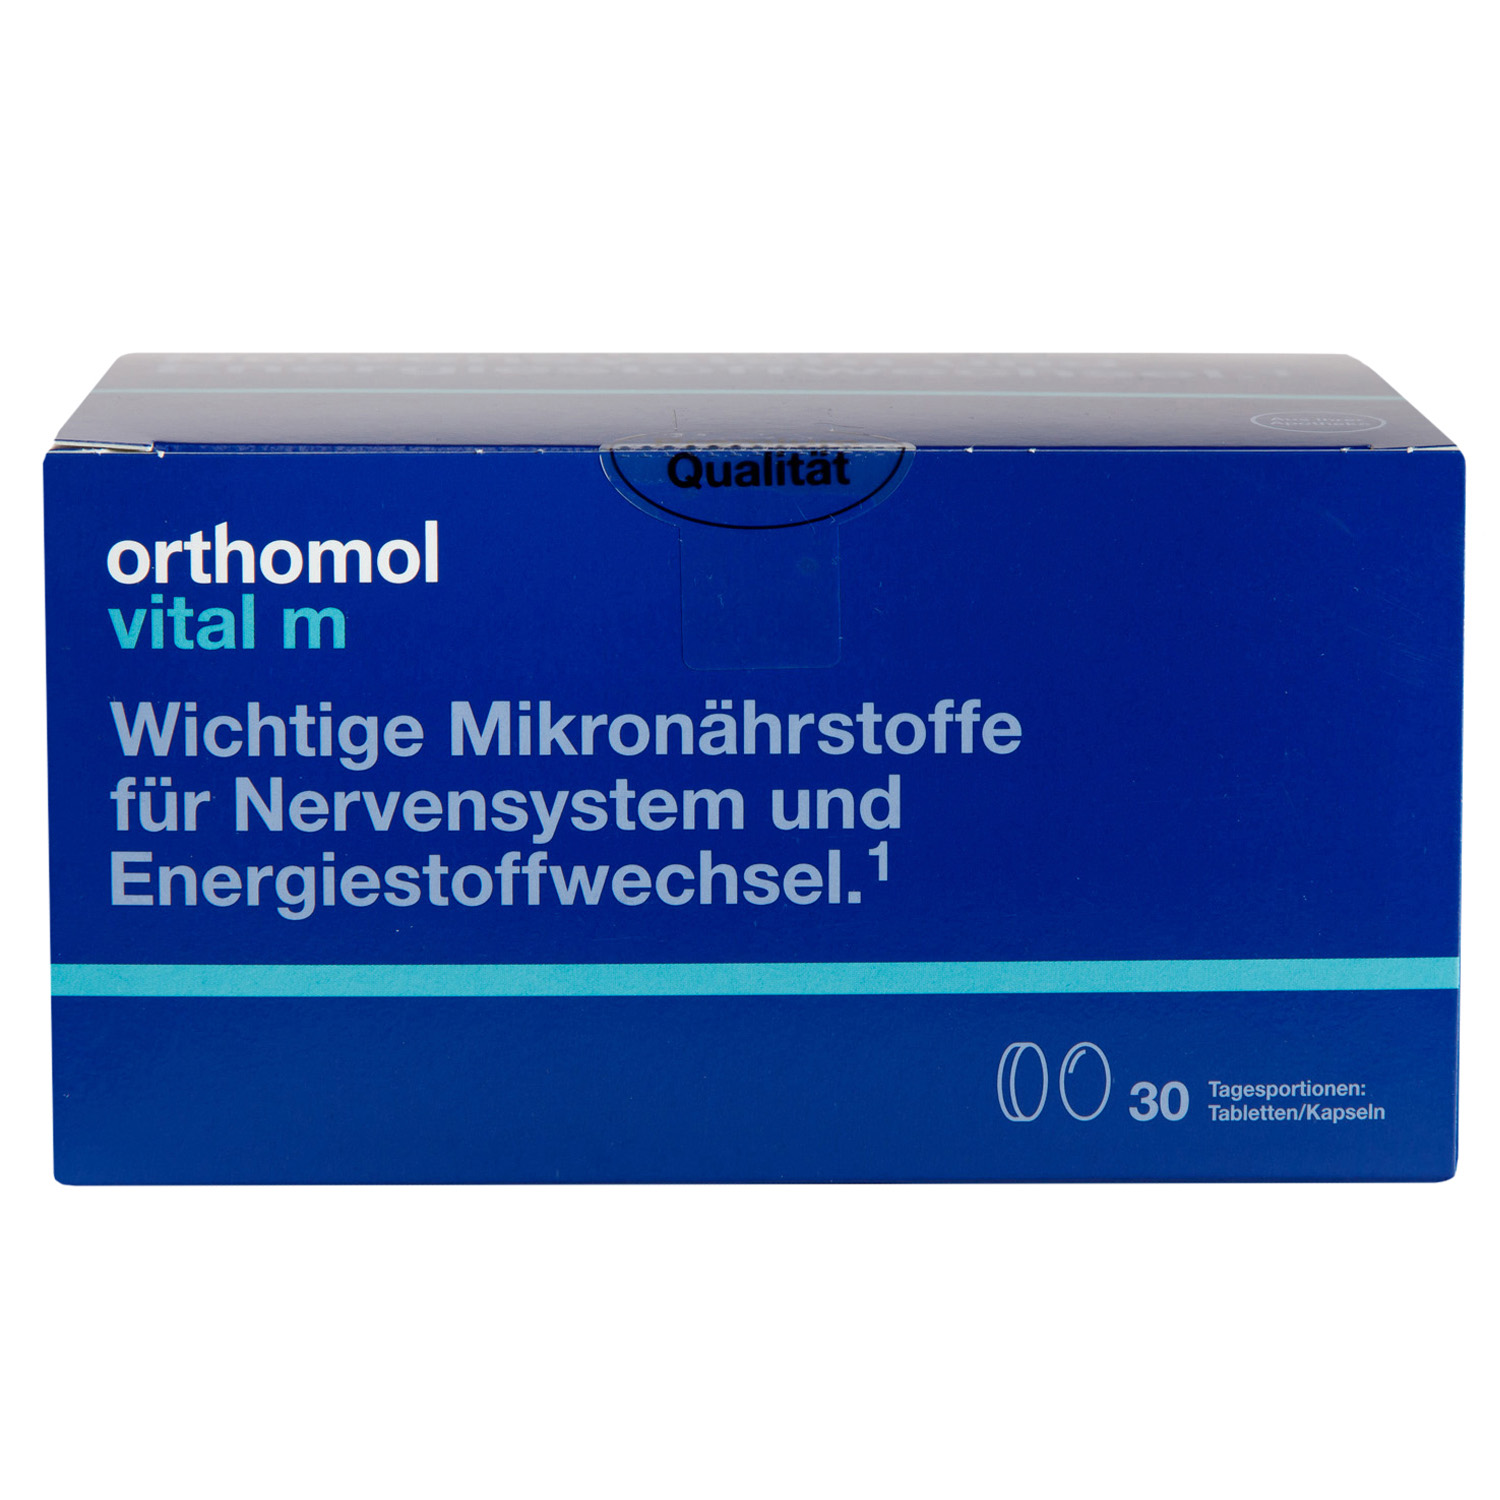 Orthomol Комплекс Витал М, 30 саше (Orthomol, Для мужчин) orthomol комплекс тендо 30 саше с порошком 30 таблеток 60 капсул orthomol для опорно двигательного аппарата